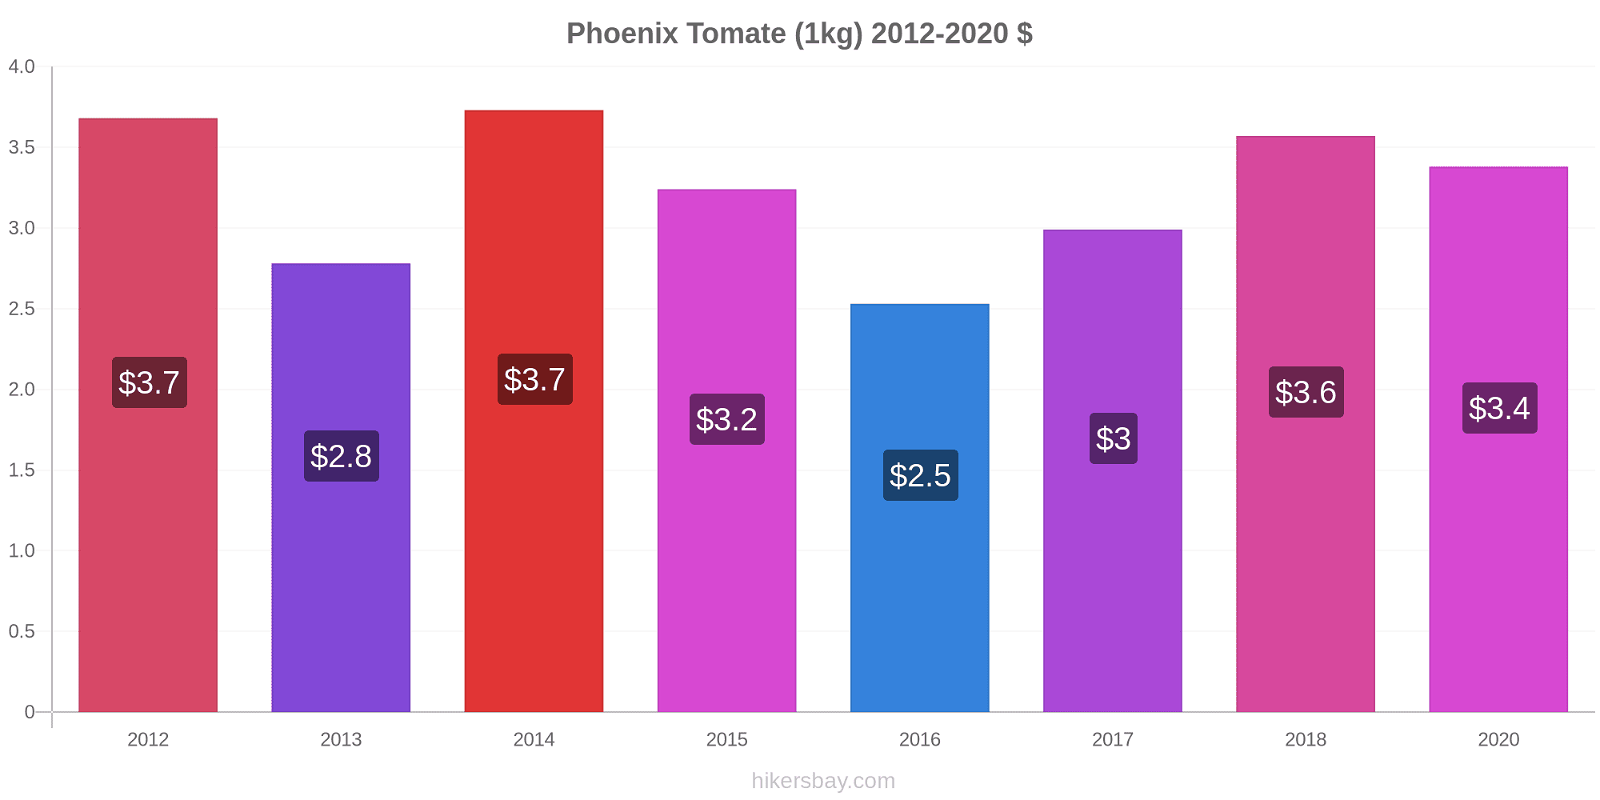 Phoenix cambios de precios Tomate (1kg) hikersbay.com